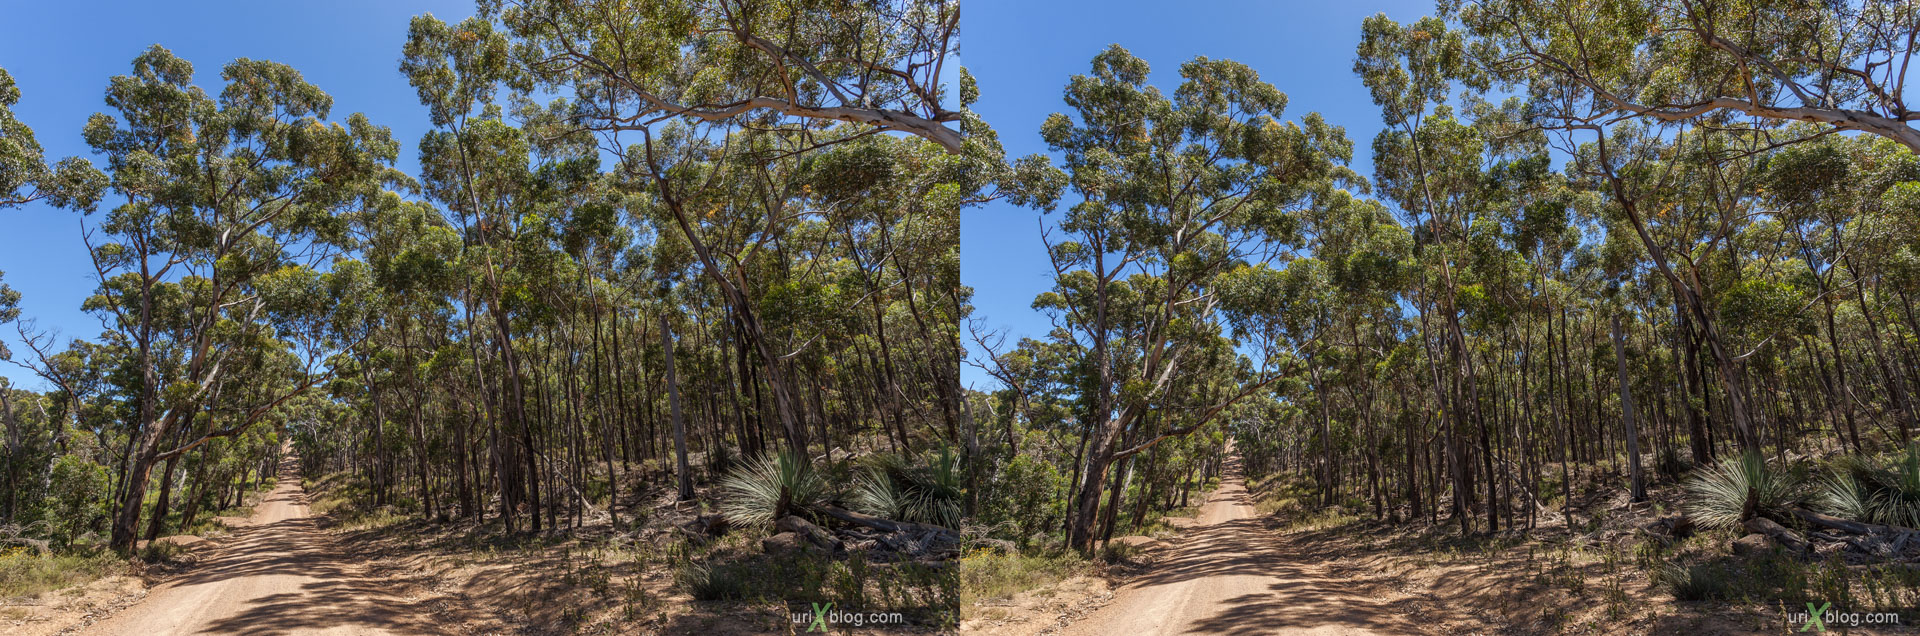 дорога, лес, Ravine Des Casoars Wilderness Protection Area, остров Кенгуру, Австралия, 3D, перекрёстная стереопара, стерео, стереопара, 2011